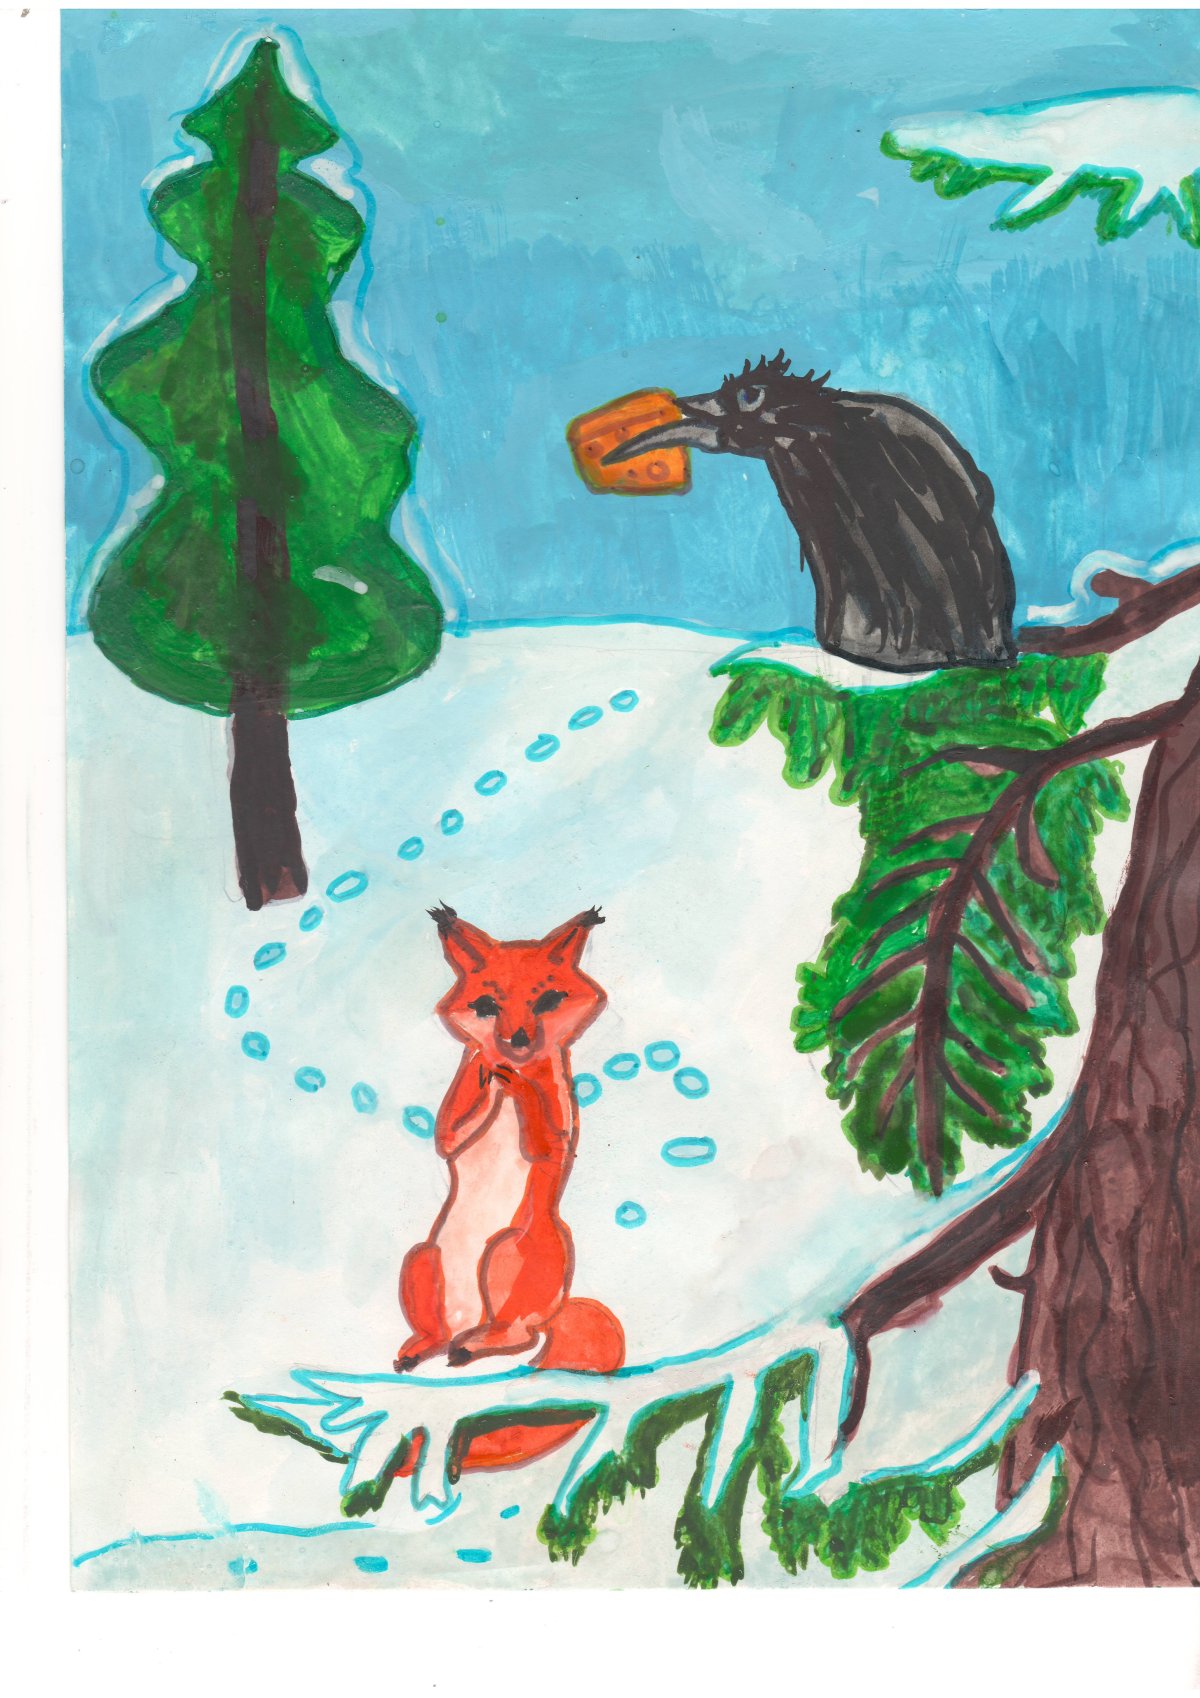 Иллюстрация к басне Крылова ворона и лисица